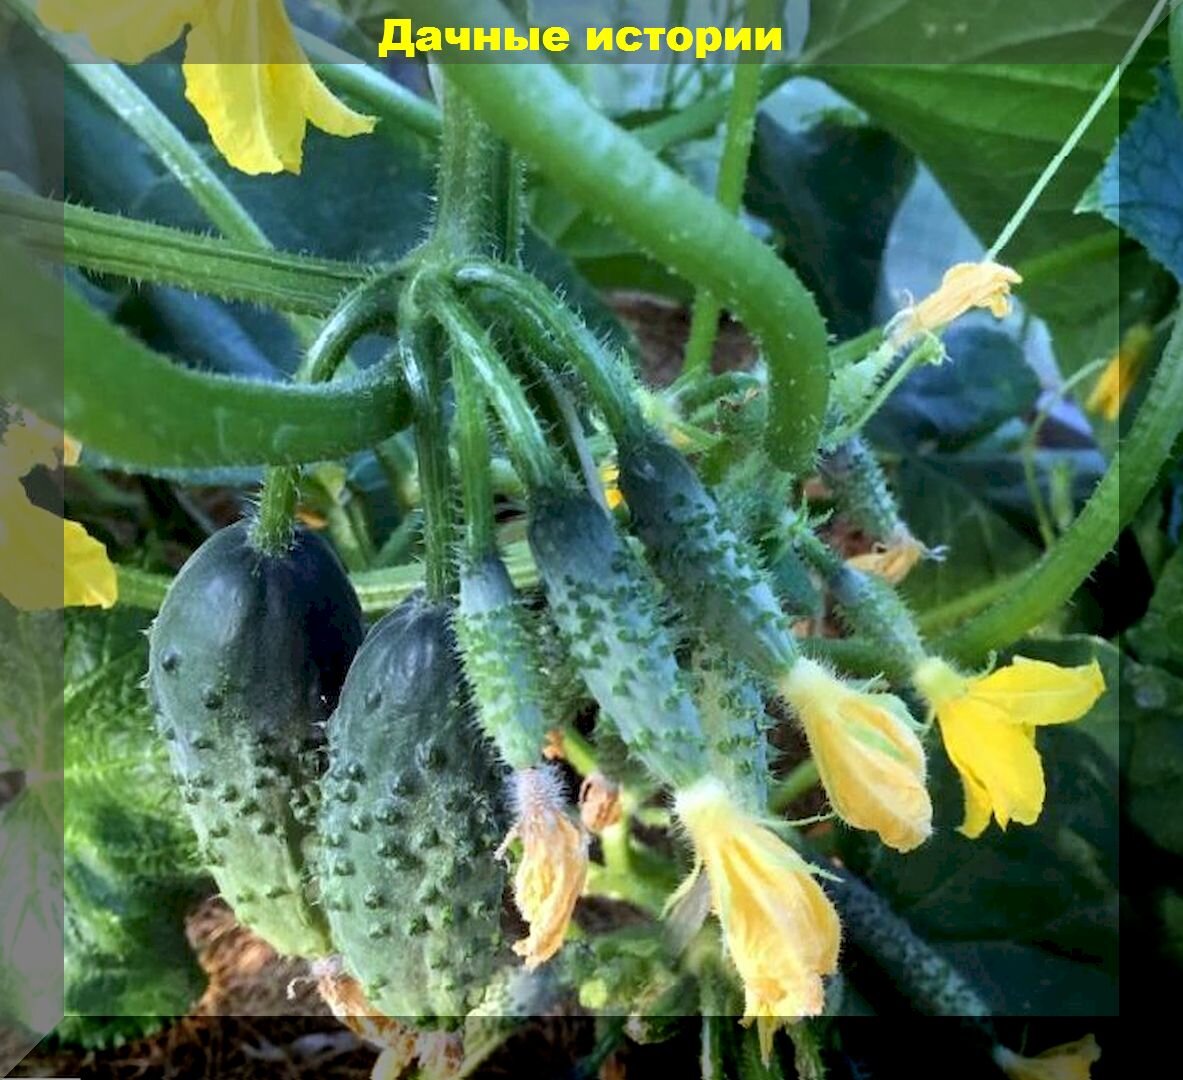 Выращивание огурцов рассадой: лучшие сорта огурцов для хорошего урожая и важные советы по уходу за рассадой огурцов